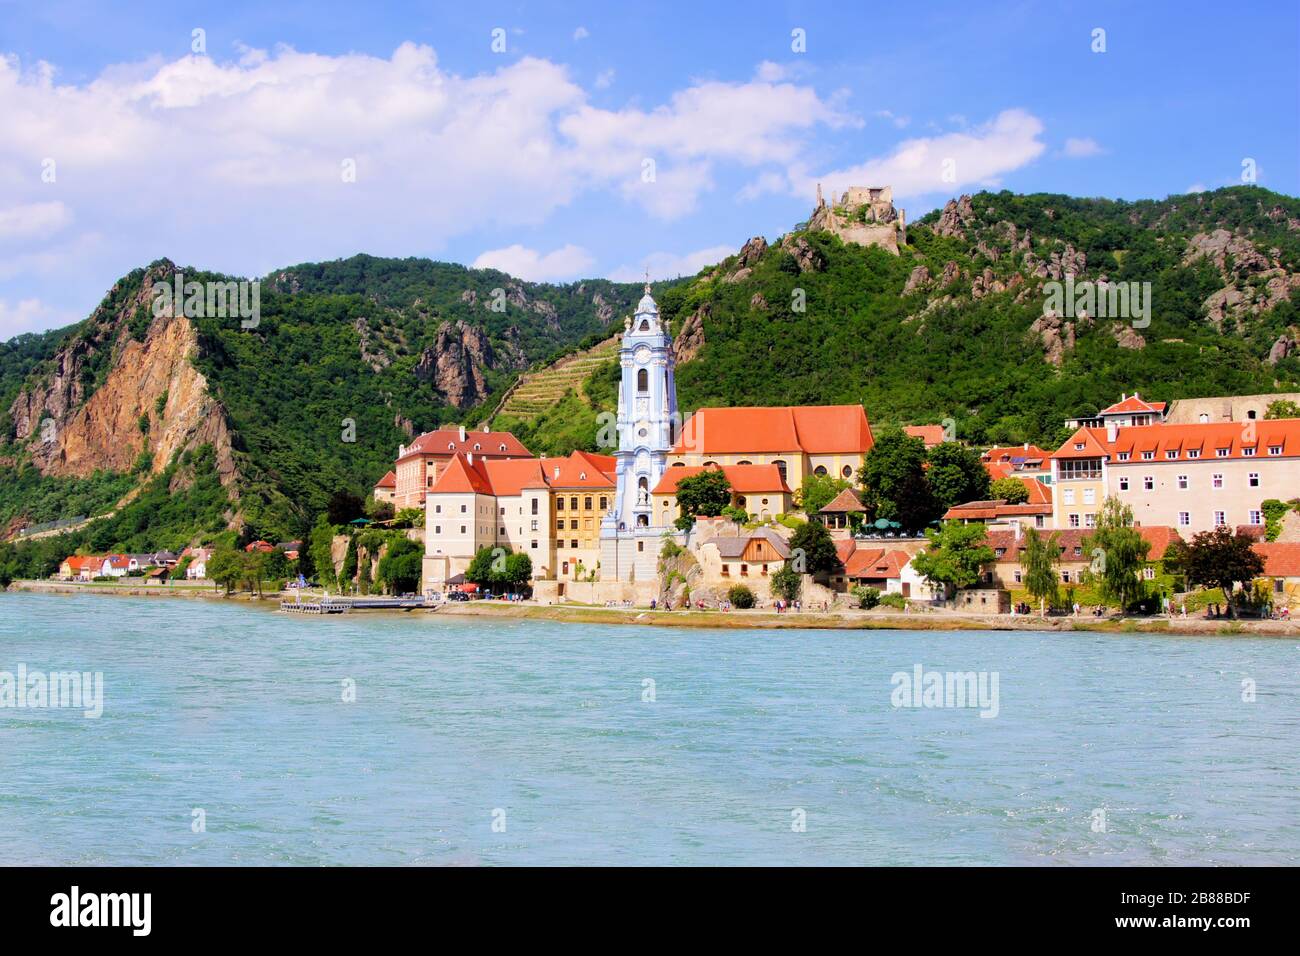 Village of Durnstein along the Danube, Wachau Valley, Austria Stock Photo